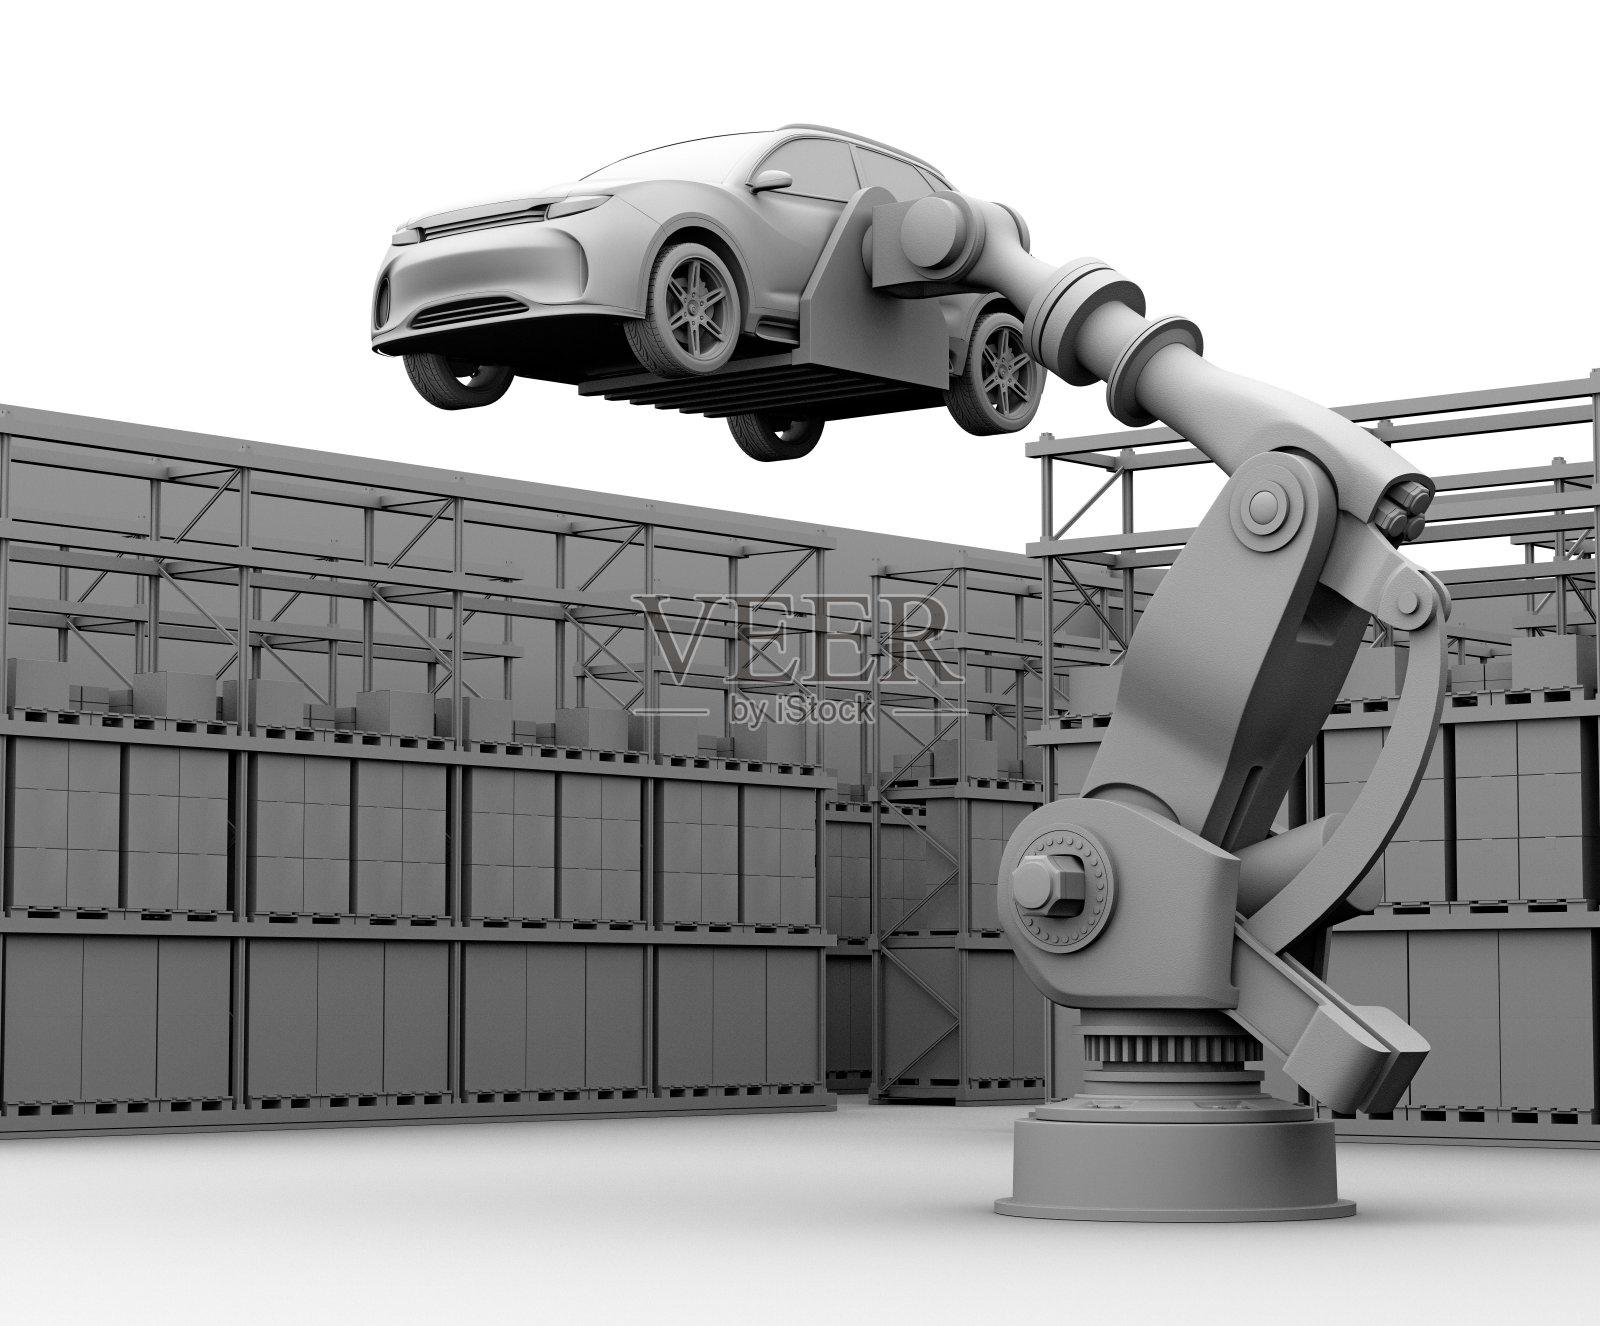 粘土渲染图像的重量级机器人手臂携带白色SUV在装配工厂照片摄影图片